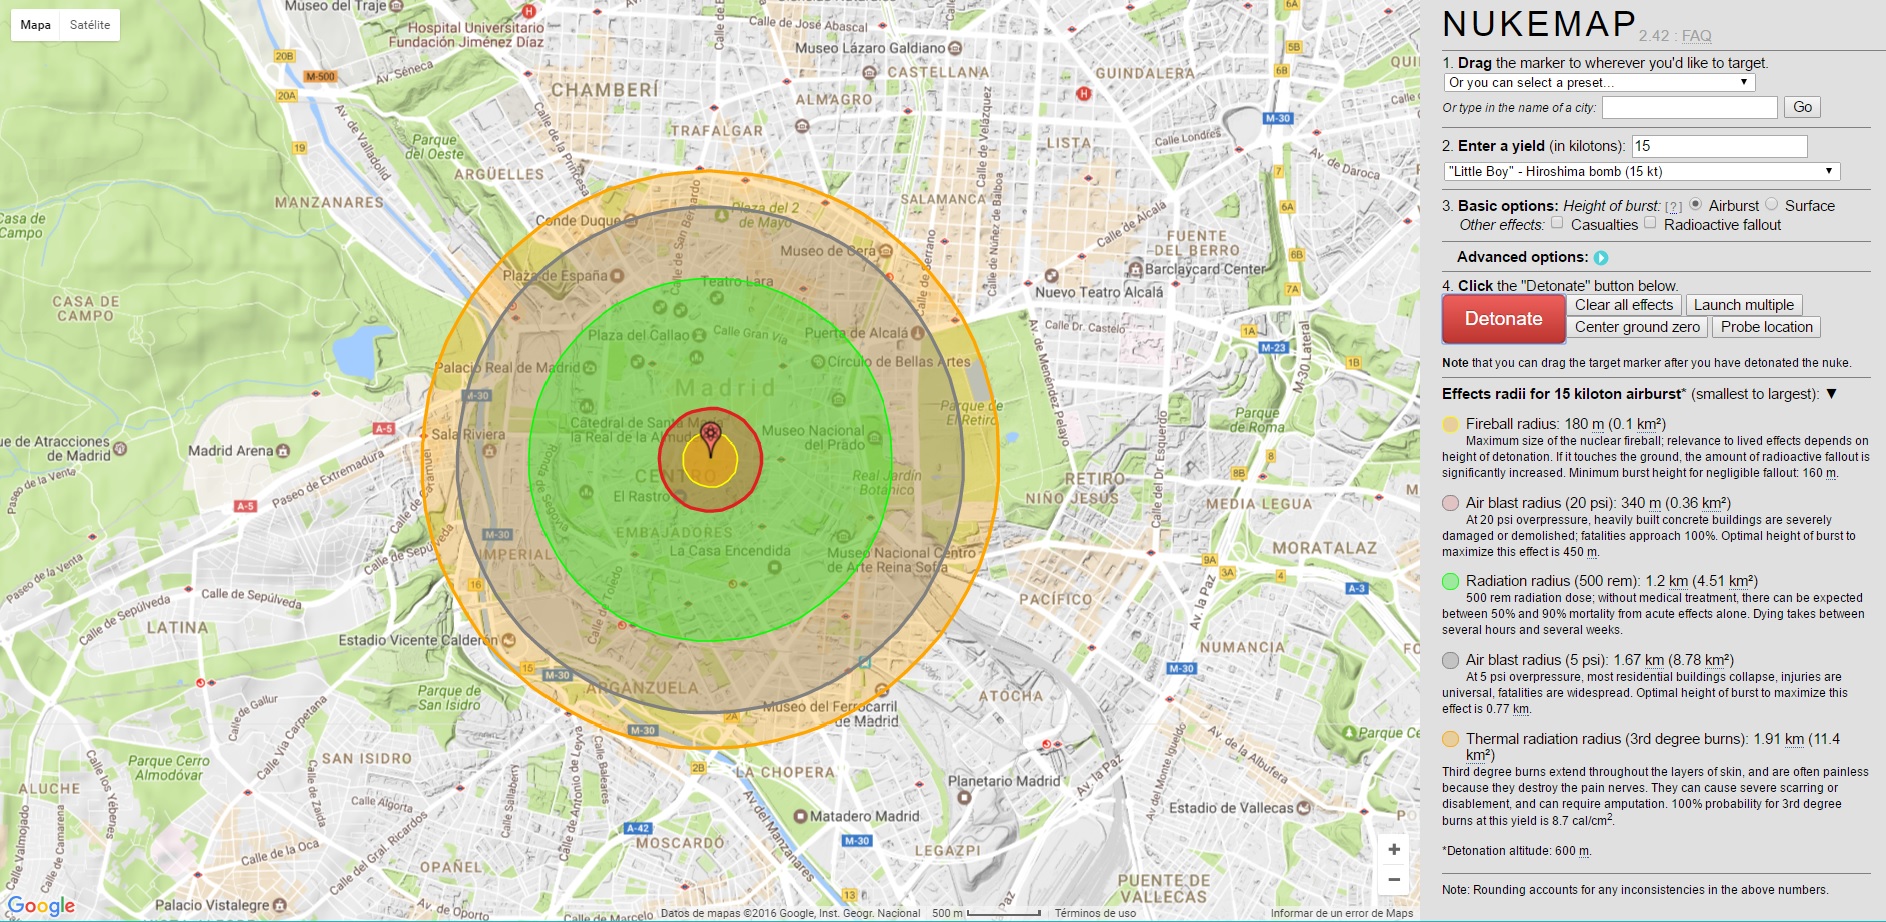 ¿Qué ocurriría si una bomba nuclear cayese en tu ciudad?